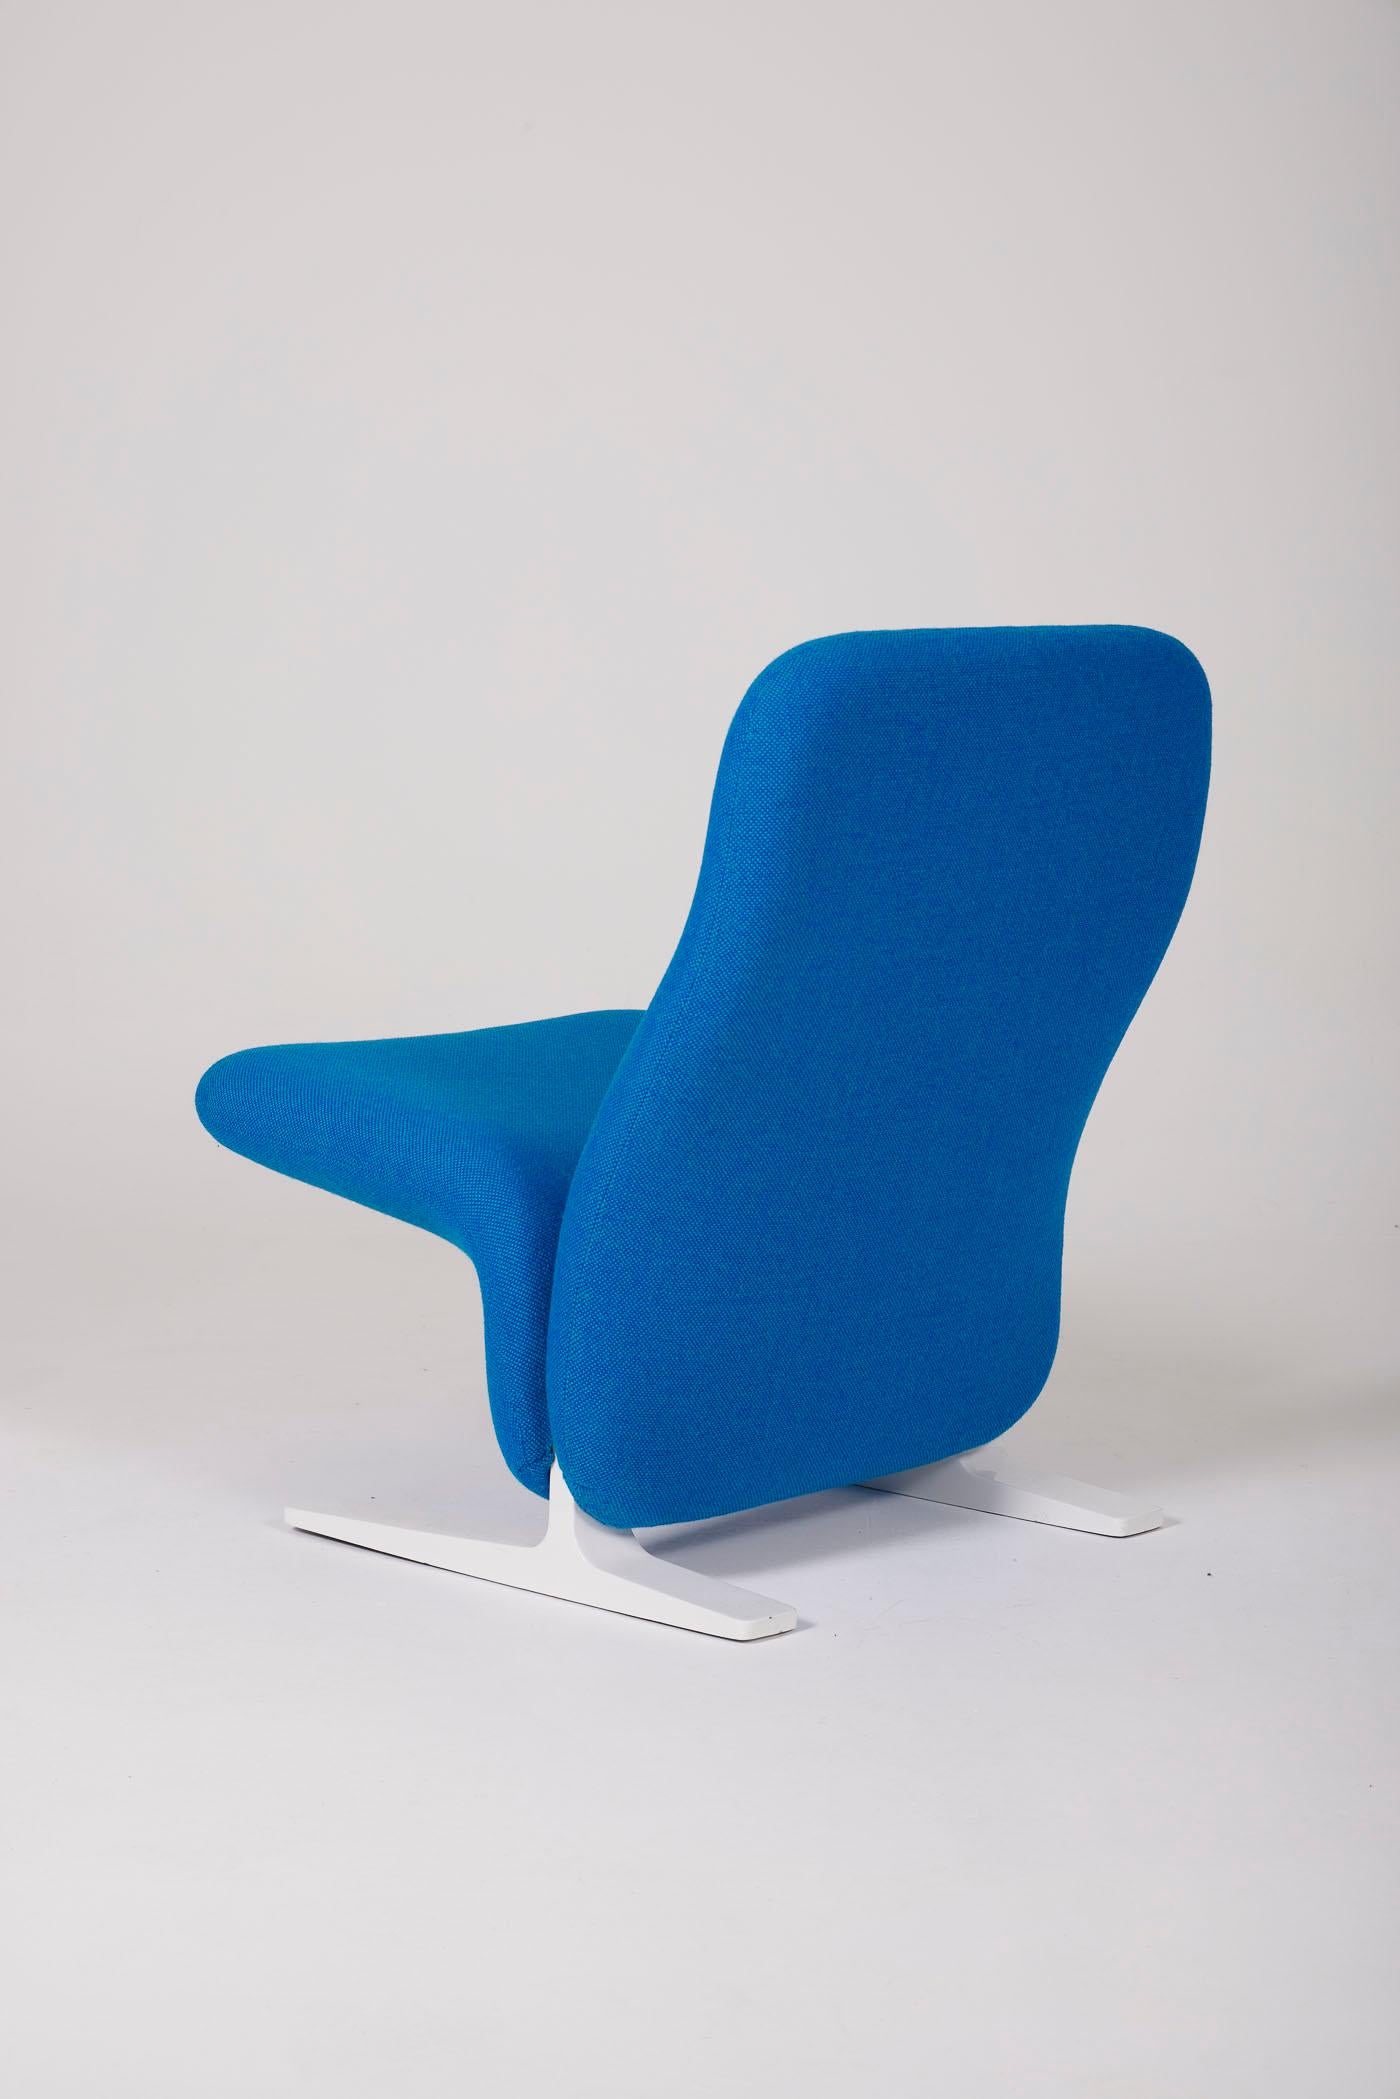 Textile Pierre Paulin F780 armchair For Sale